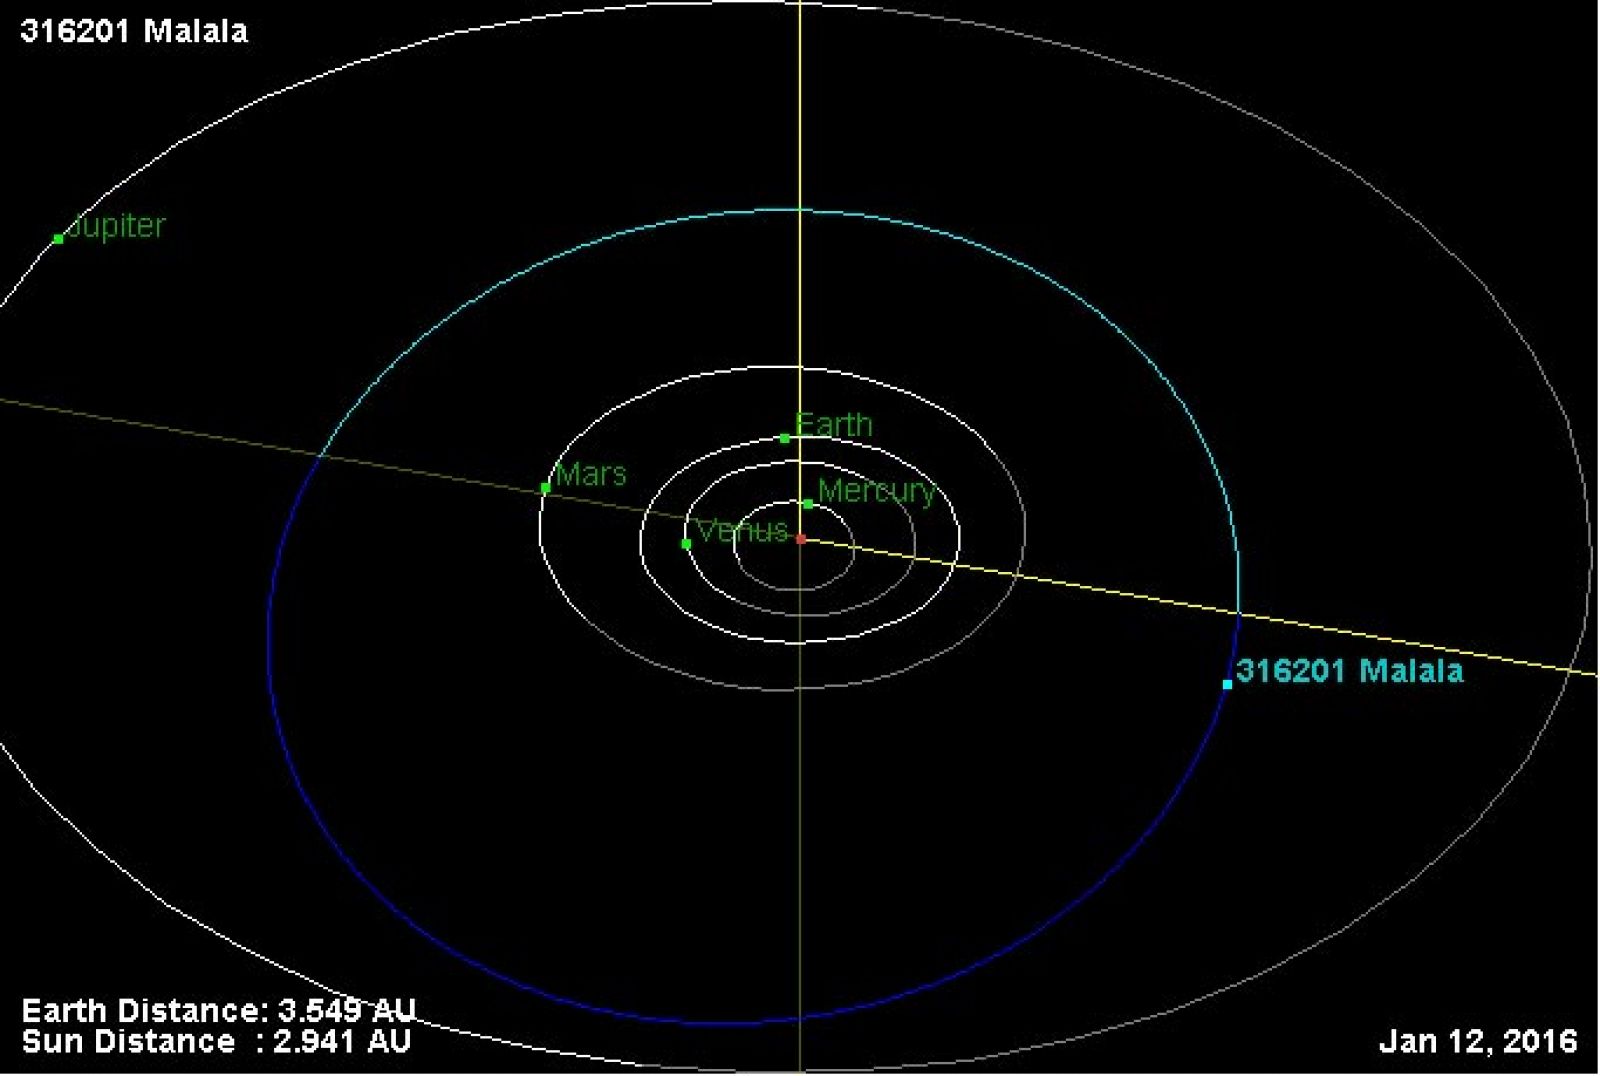 Diagrama, tomado de la página oficial de la NASA, en el que se muestra la trayectoria del asteroide Malala